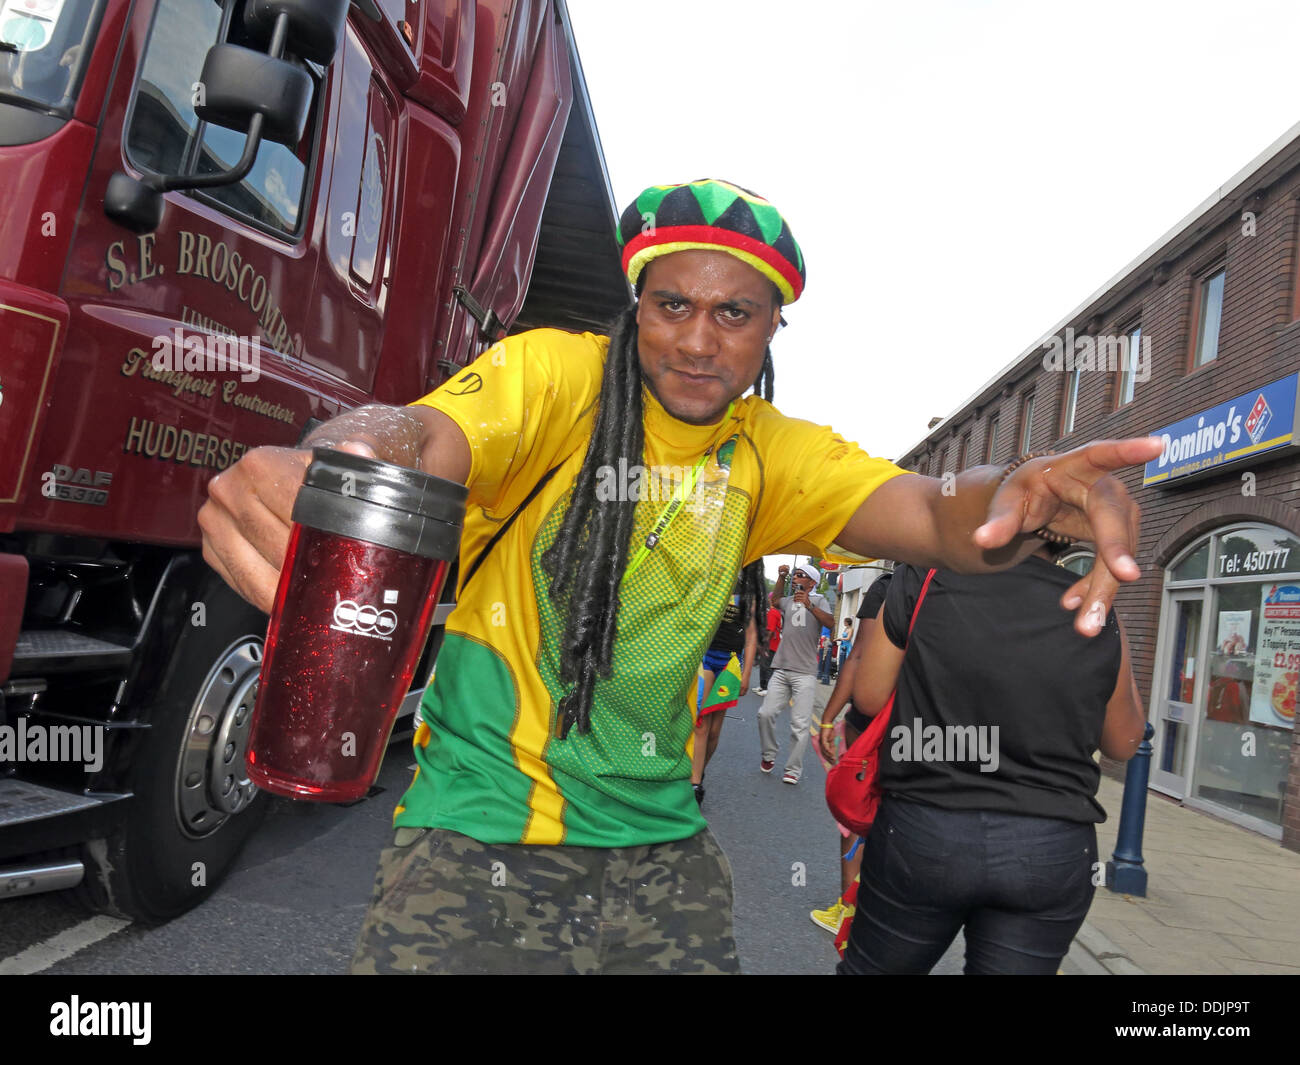 Danseuse en costume avec chapeau de Huddersfield Carnival parade 2013 fête de rue Africains des Caraïbes Banque D'Images